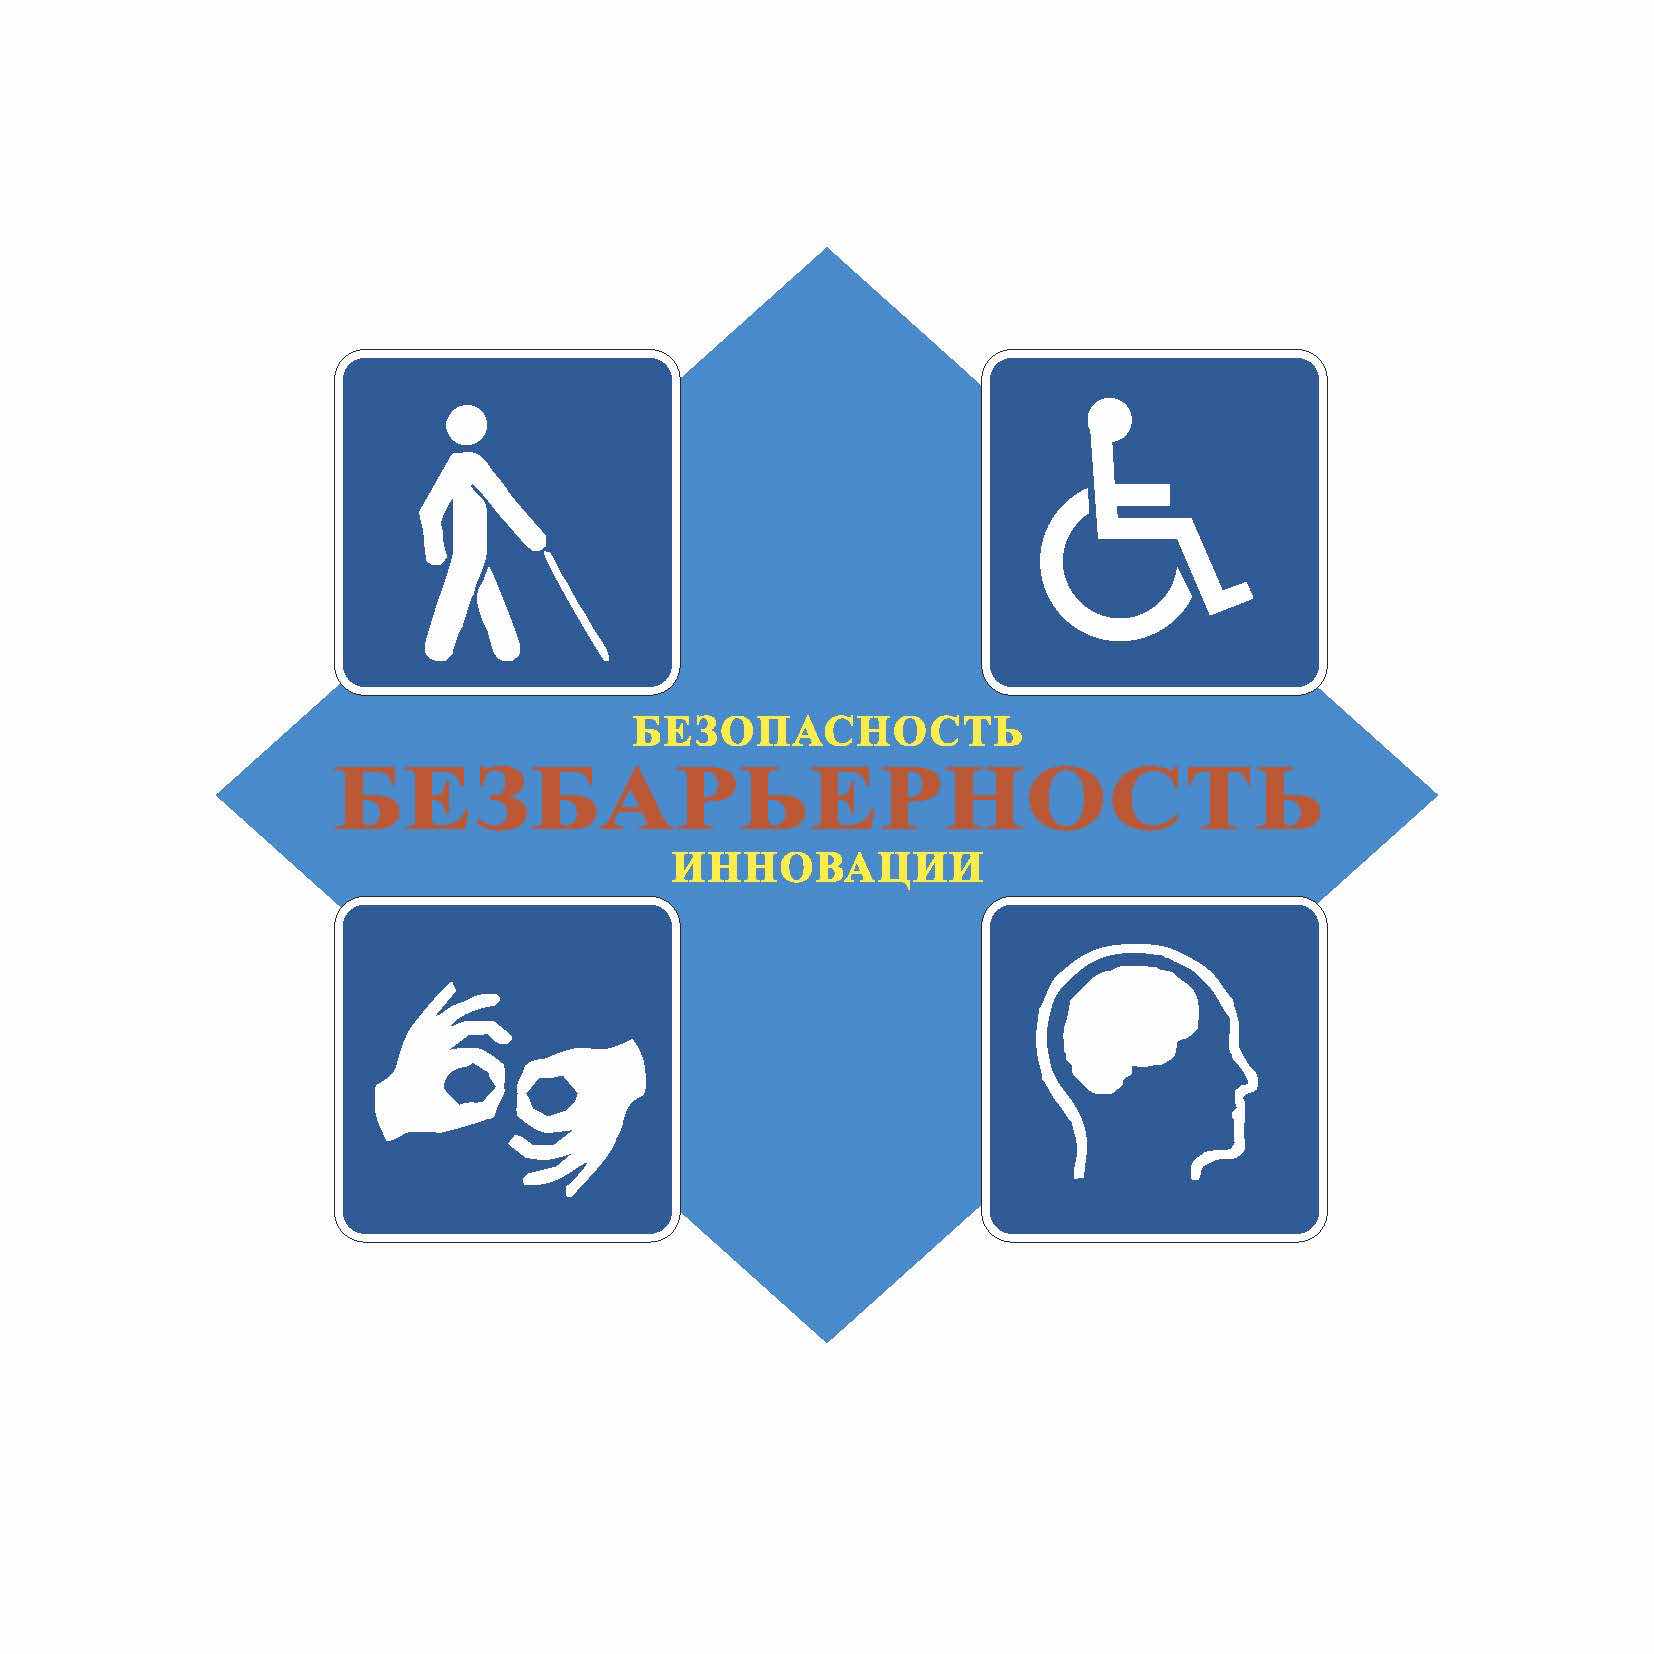 Изображение знака системы ромб синего цвета, изображающий объекты и услуги в социально значимых сферах деятельности для инвалидов и иных маломобильных групп населения